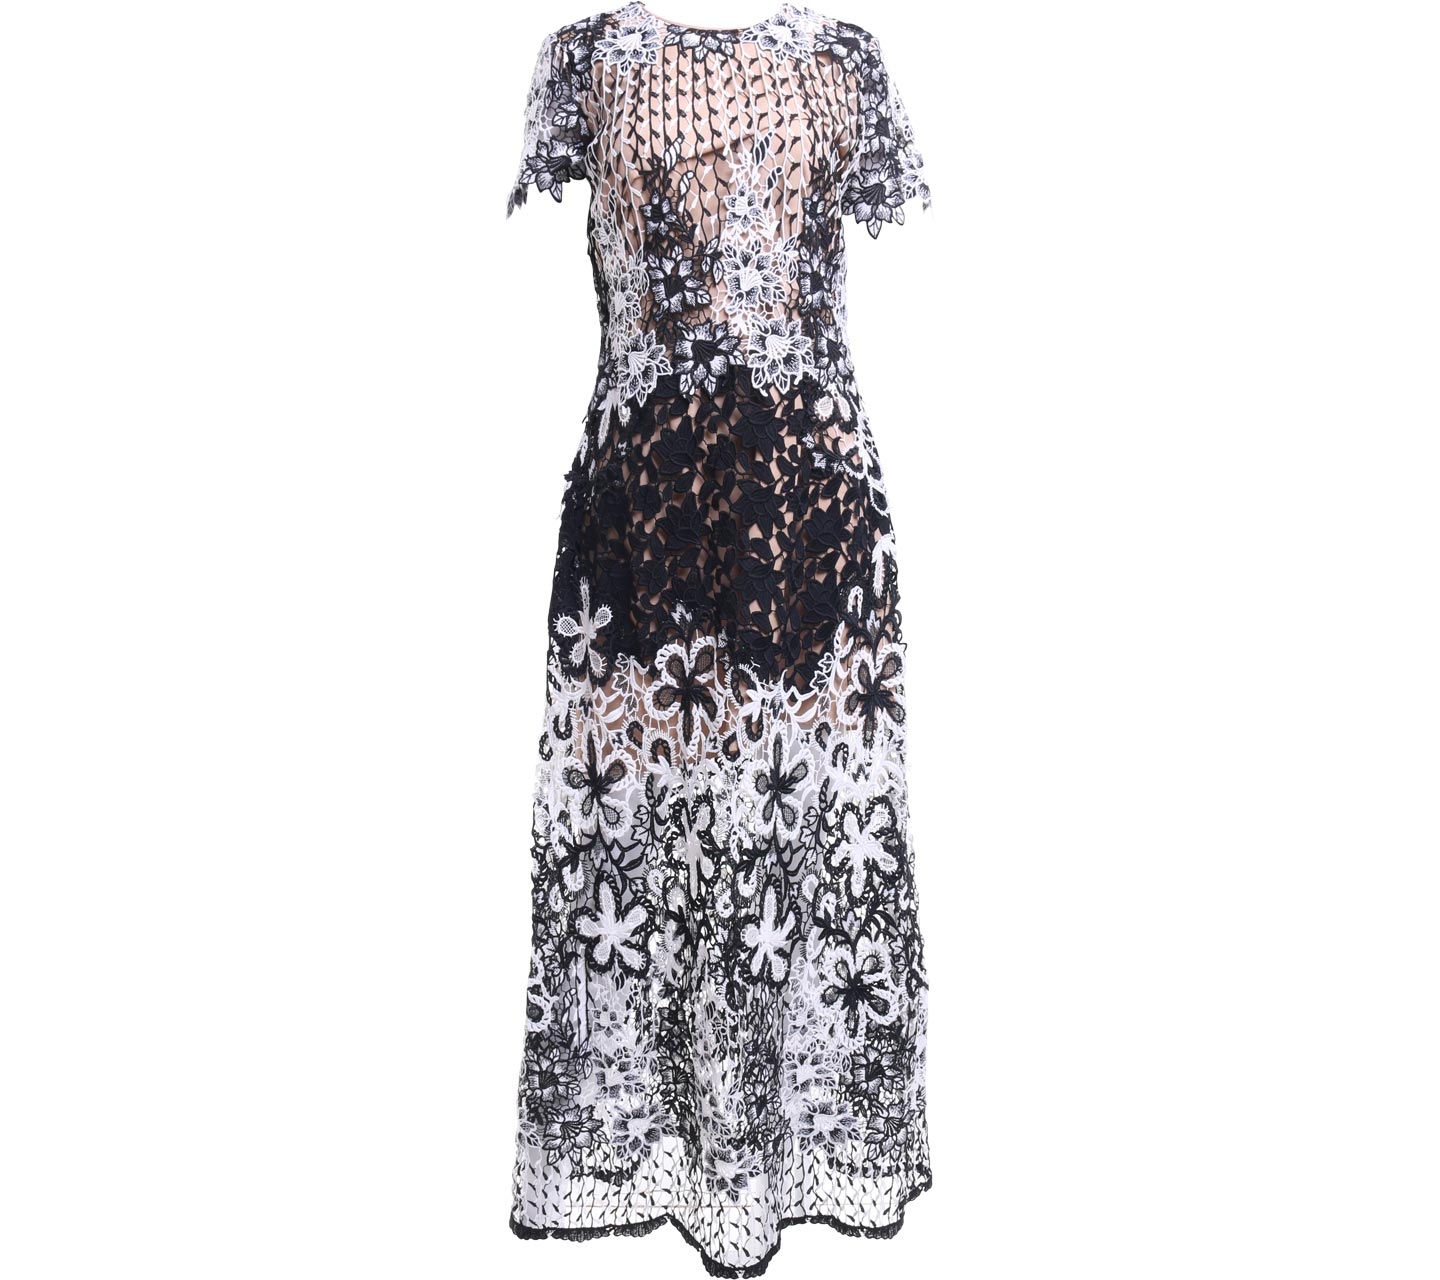 Monique Ihuillier Black & White Lace Long Dress